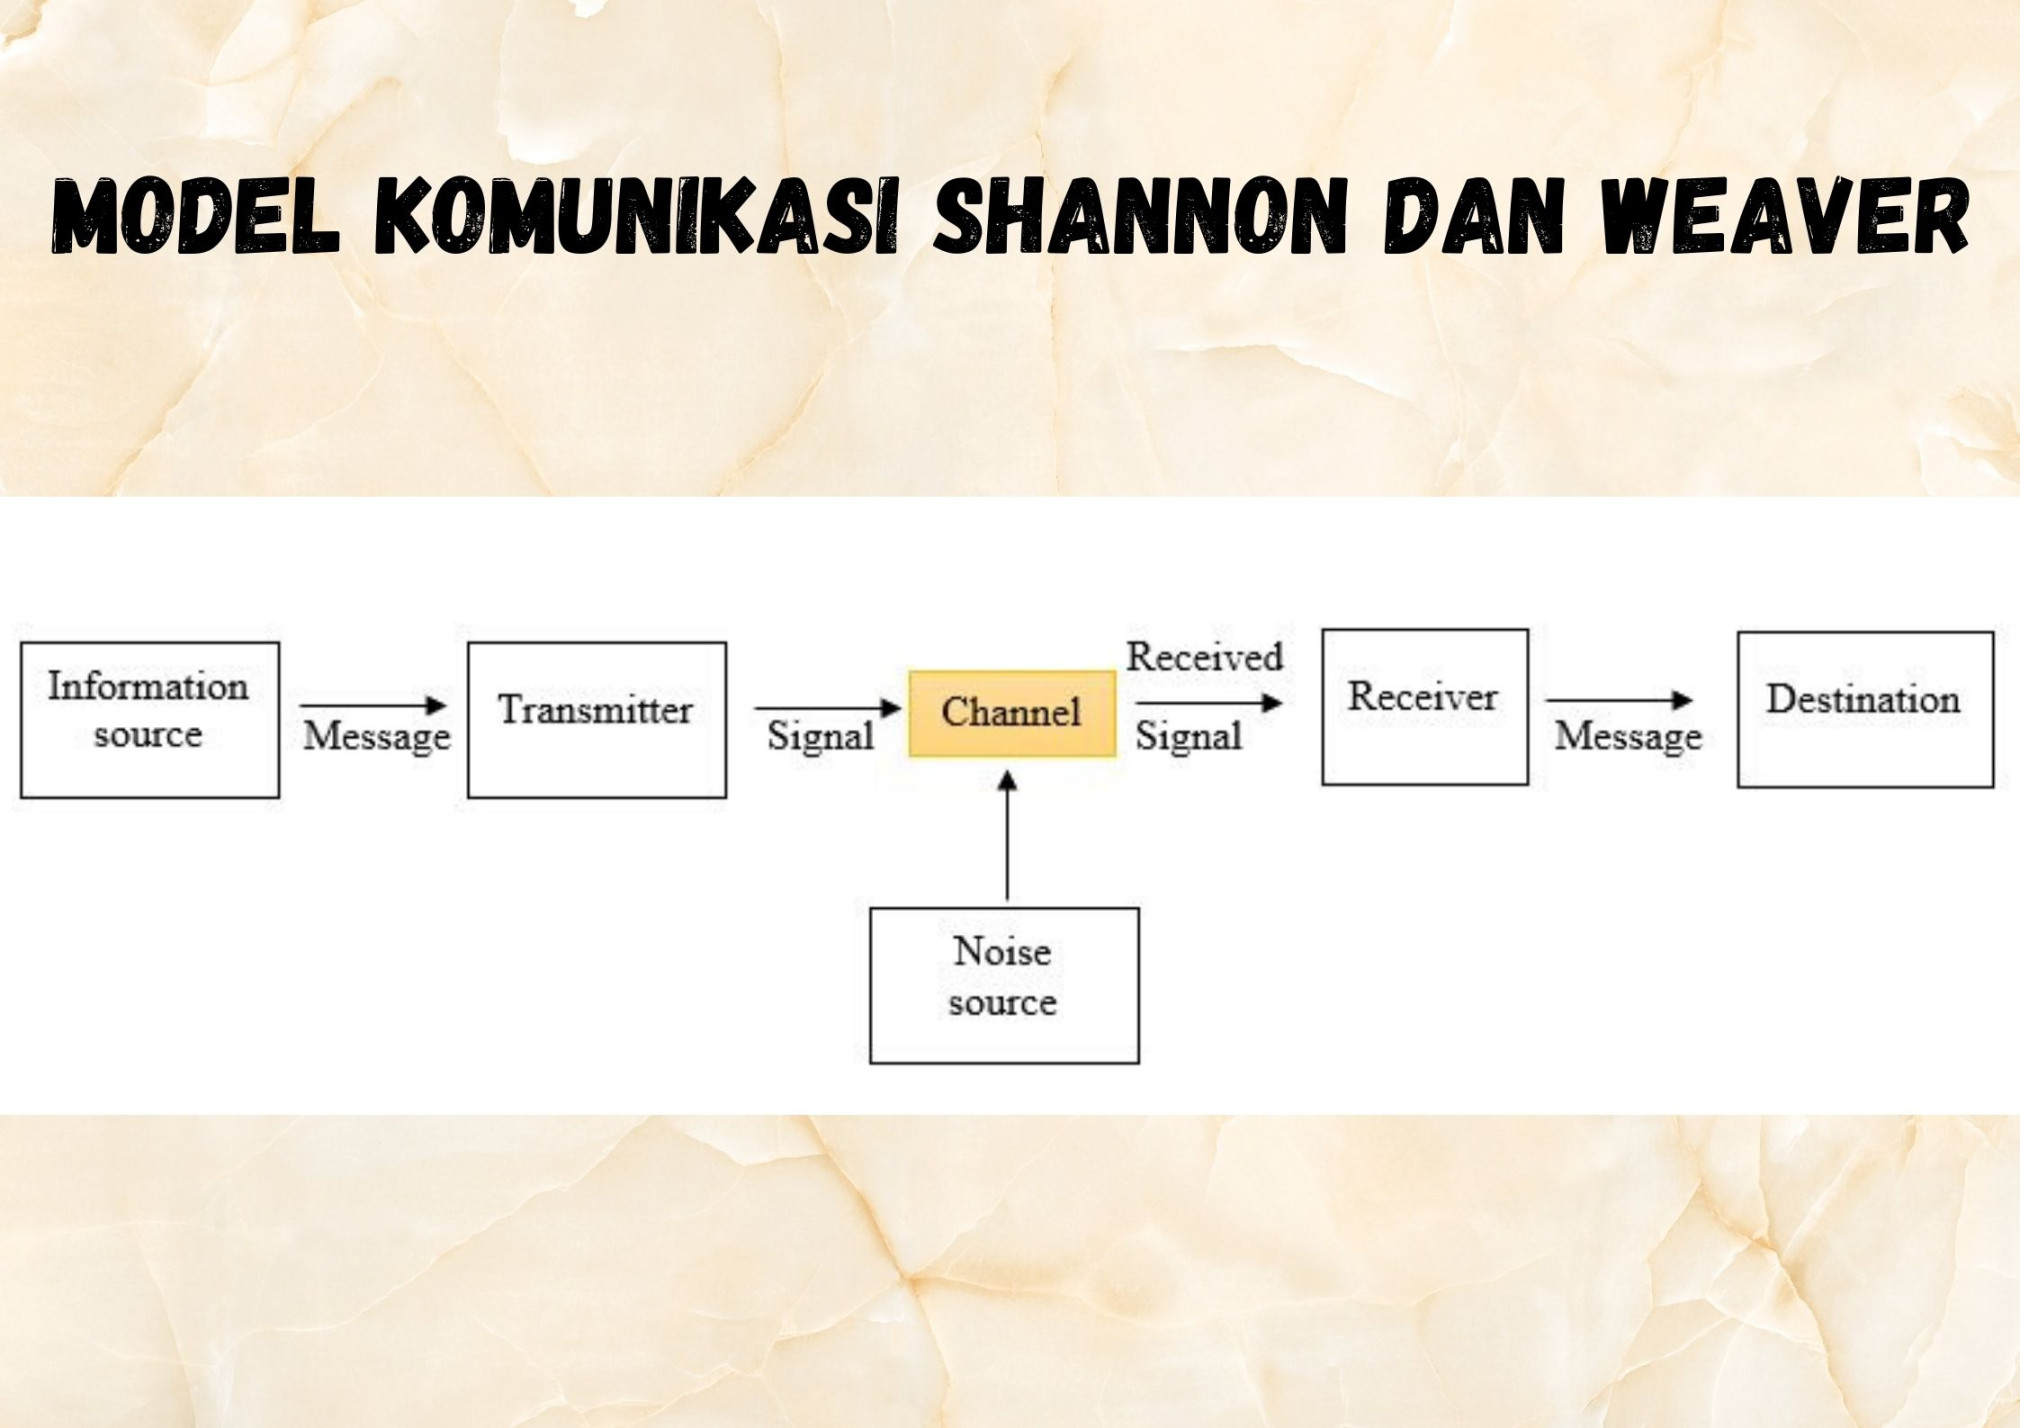 Model Komunikasi Shannon dan Weaver: Konsep dan Karakteristiknya